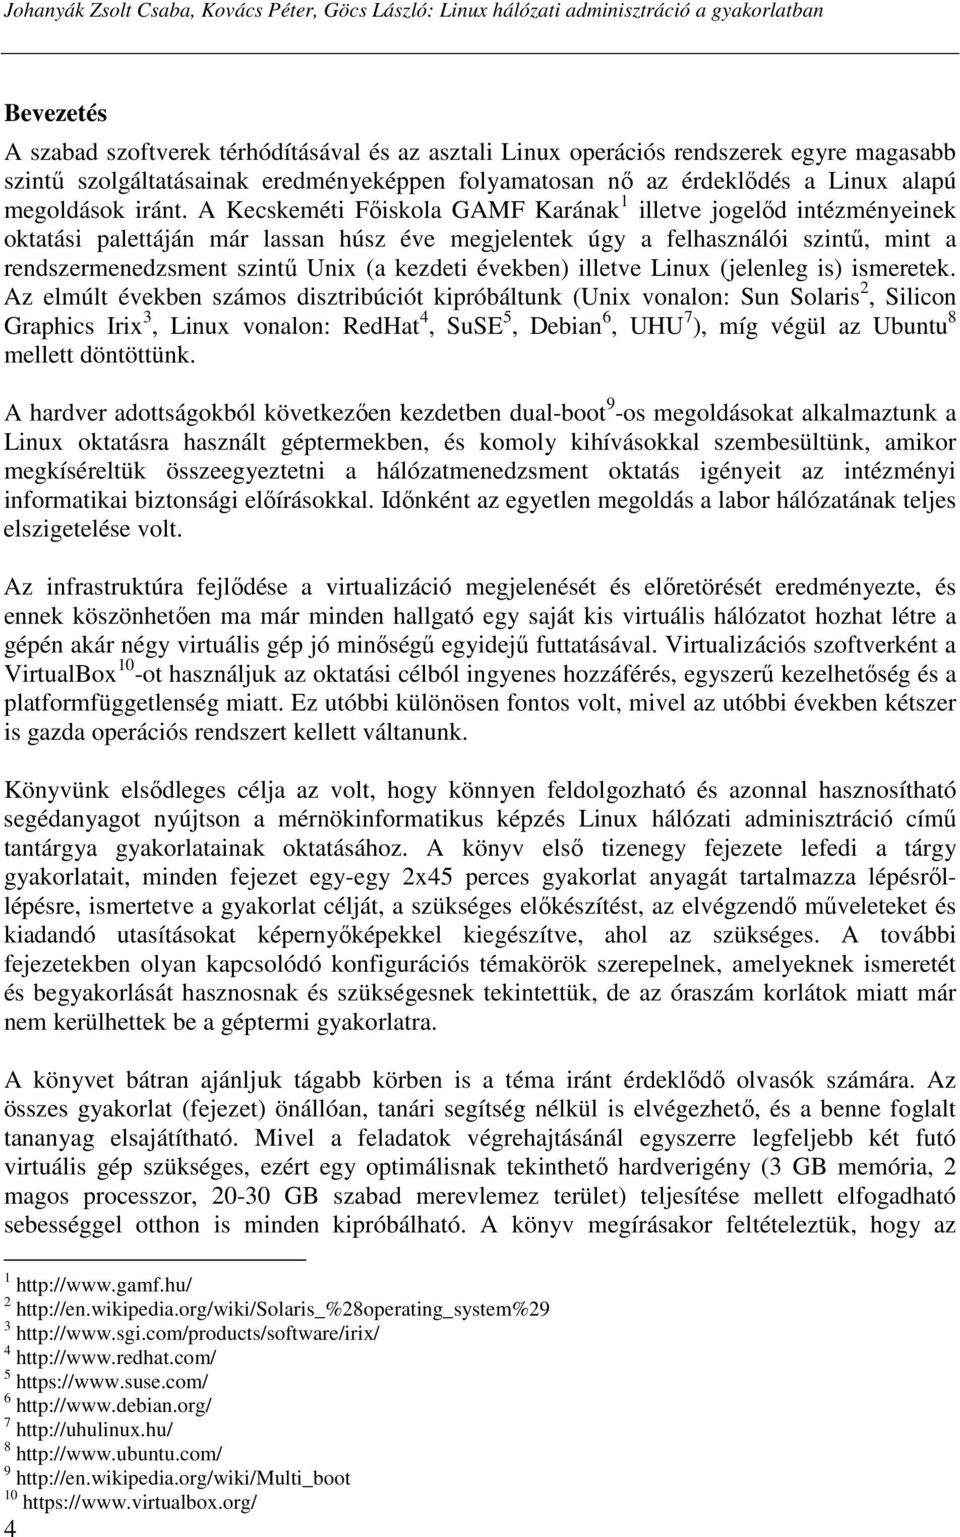 A Kecskeméti Fıiskola GAMF Karának 1 illetve jogelıd intézményeinek oktatási palettáján már lassan húsz éve megjelentek úgy a felhasználói szintő, mint a rendszermenedzsment szintő Unix (a kezdeti